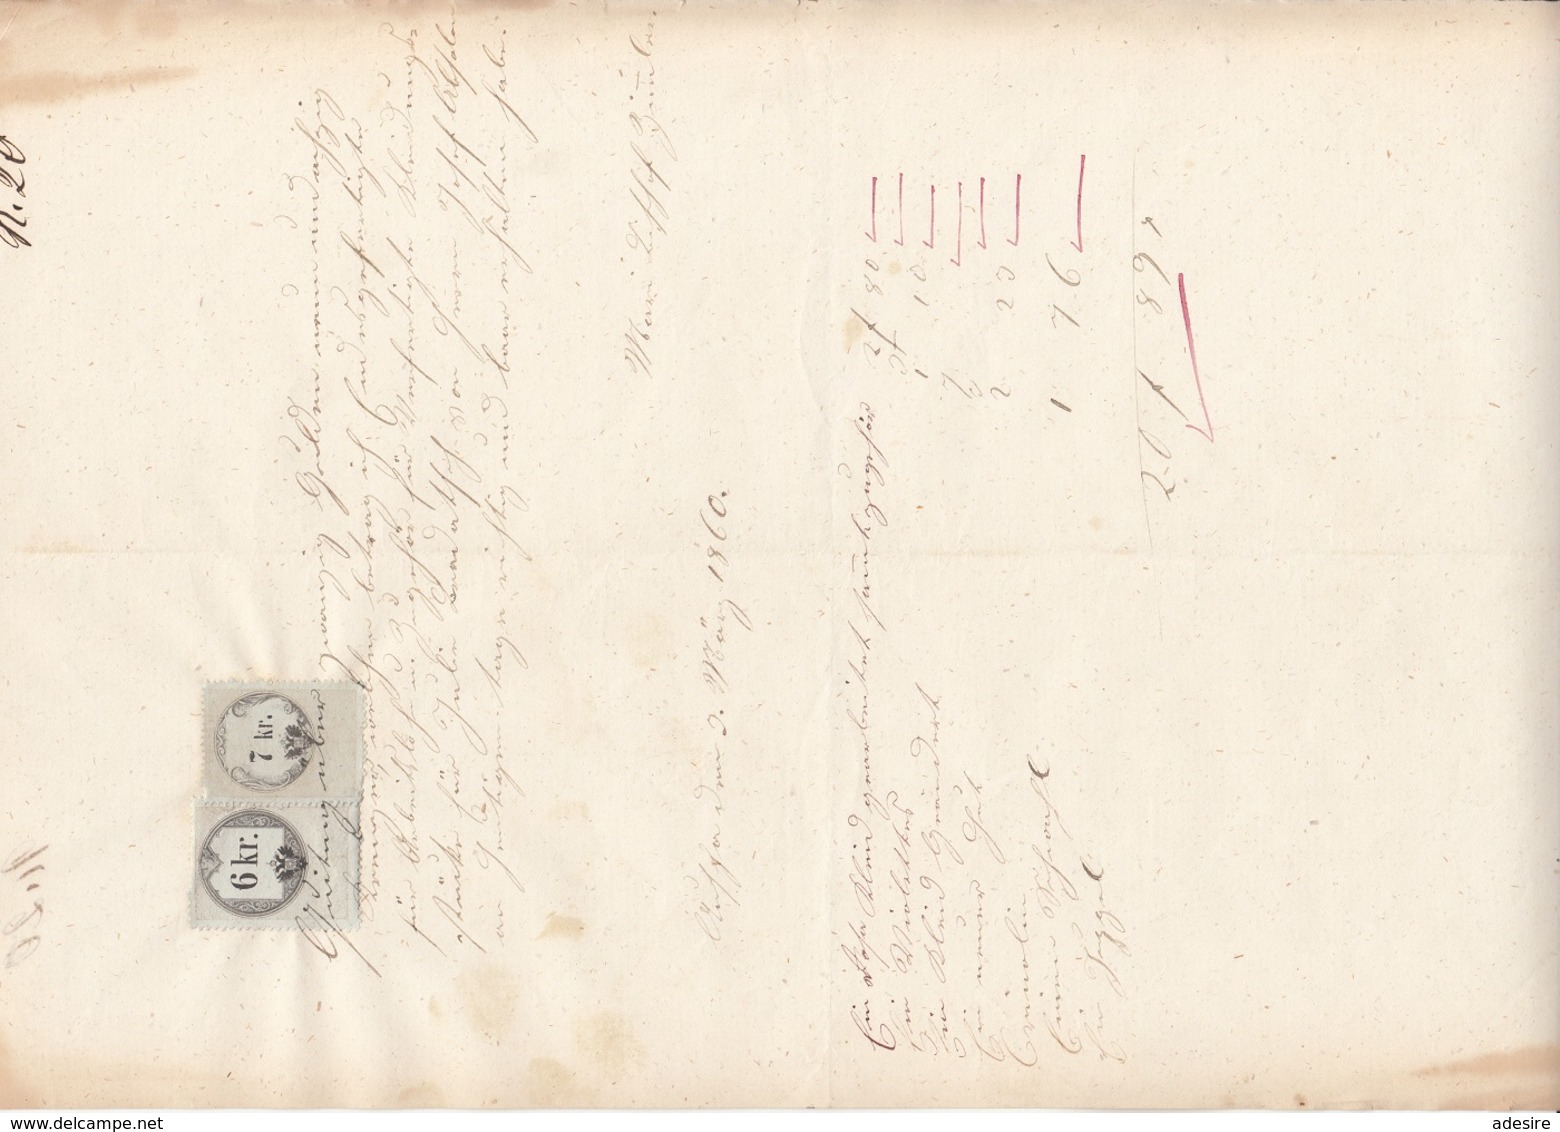 QUITTUNG 1860 - Handgeschrieben Rechnung Mit 6 + 7 Kreuzer Stempelmarke, A3 Format, Gefaltet, Gebrauchsspuren - Oostenrijk